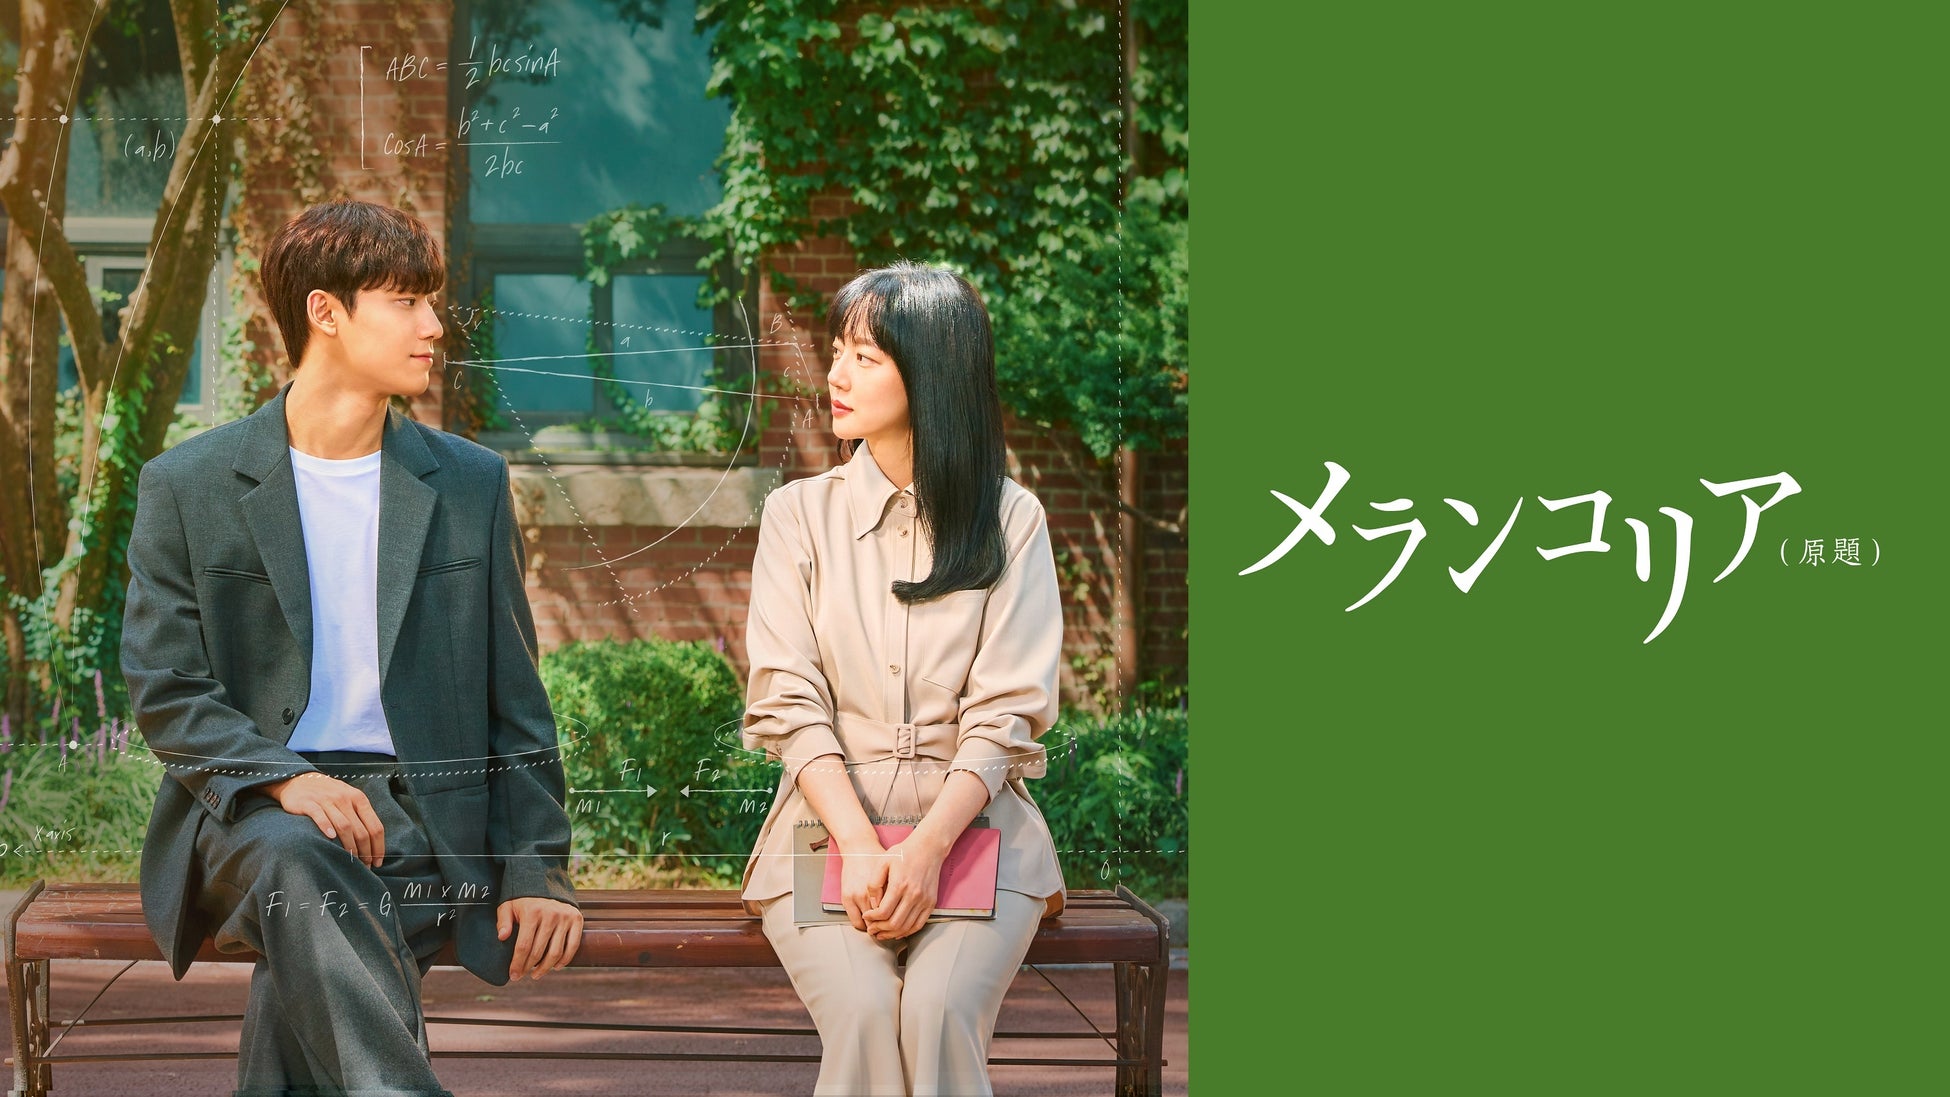 名古屋ローカルの人気番組「まるまる◎あいち」がこの春 第9シーズンを迎えます！大人気の双子姉妹あいちゃんとちーちゃん、弟のけんとくんを中心に愛知県の魅力的な情報をお届けします！